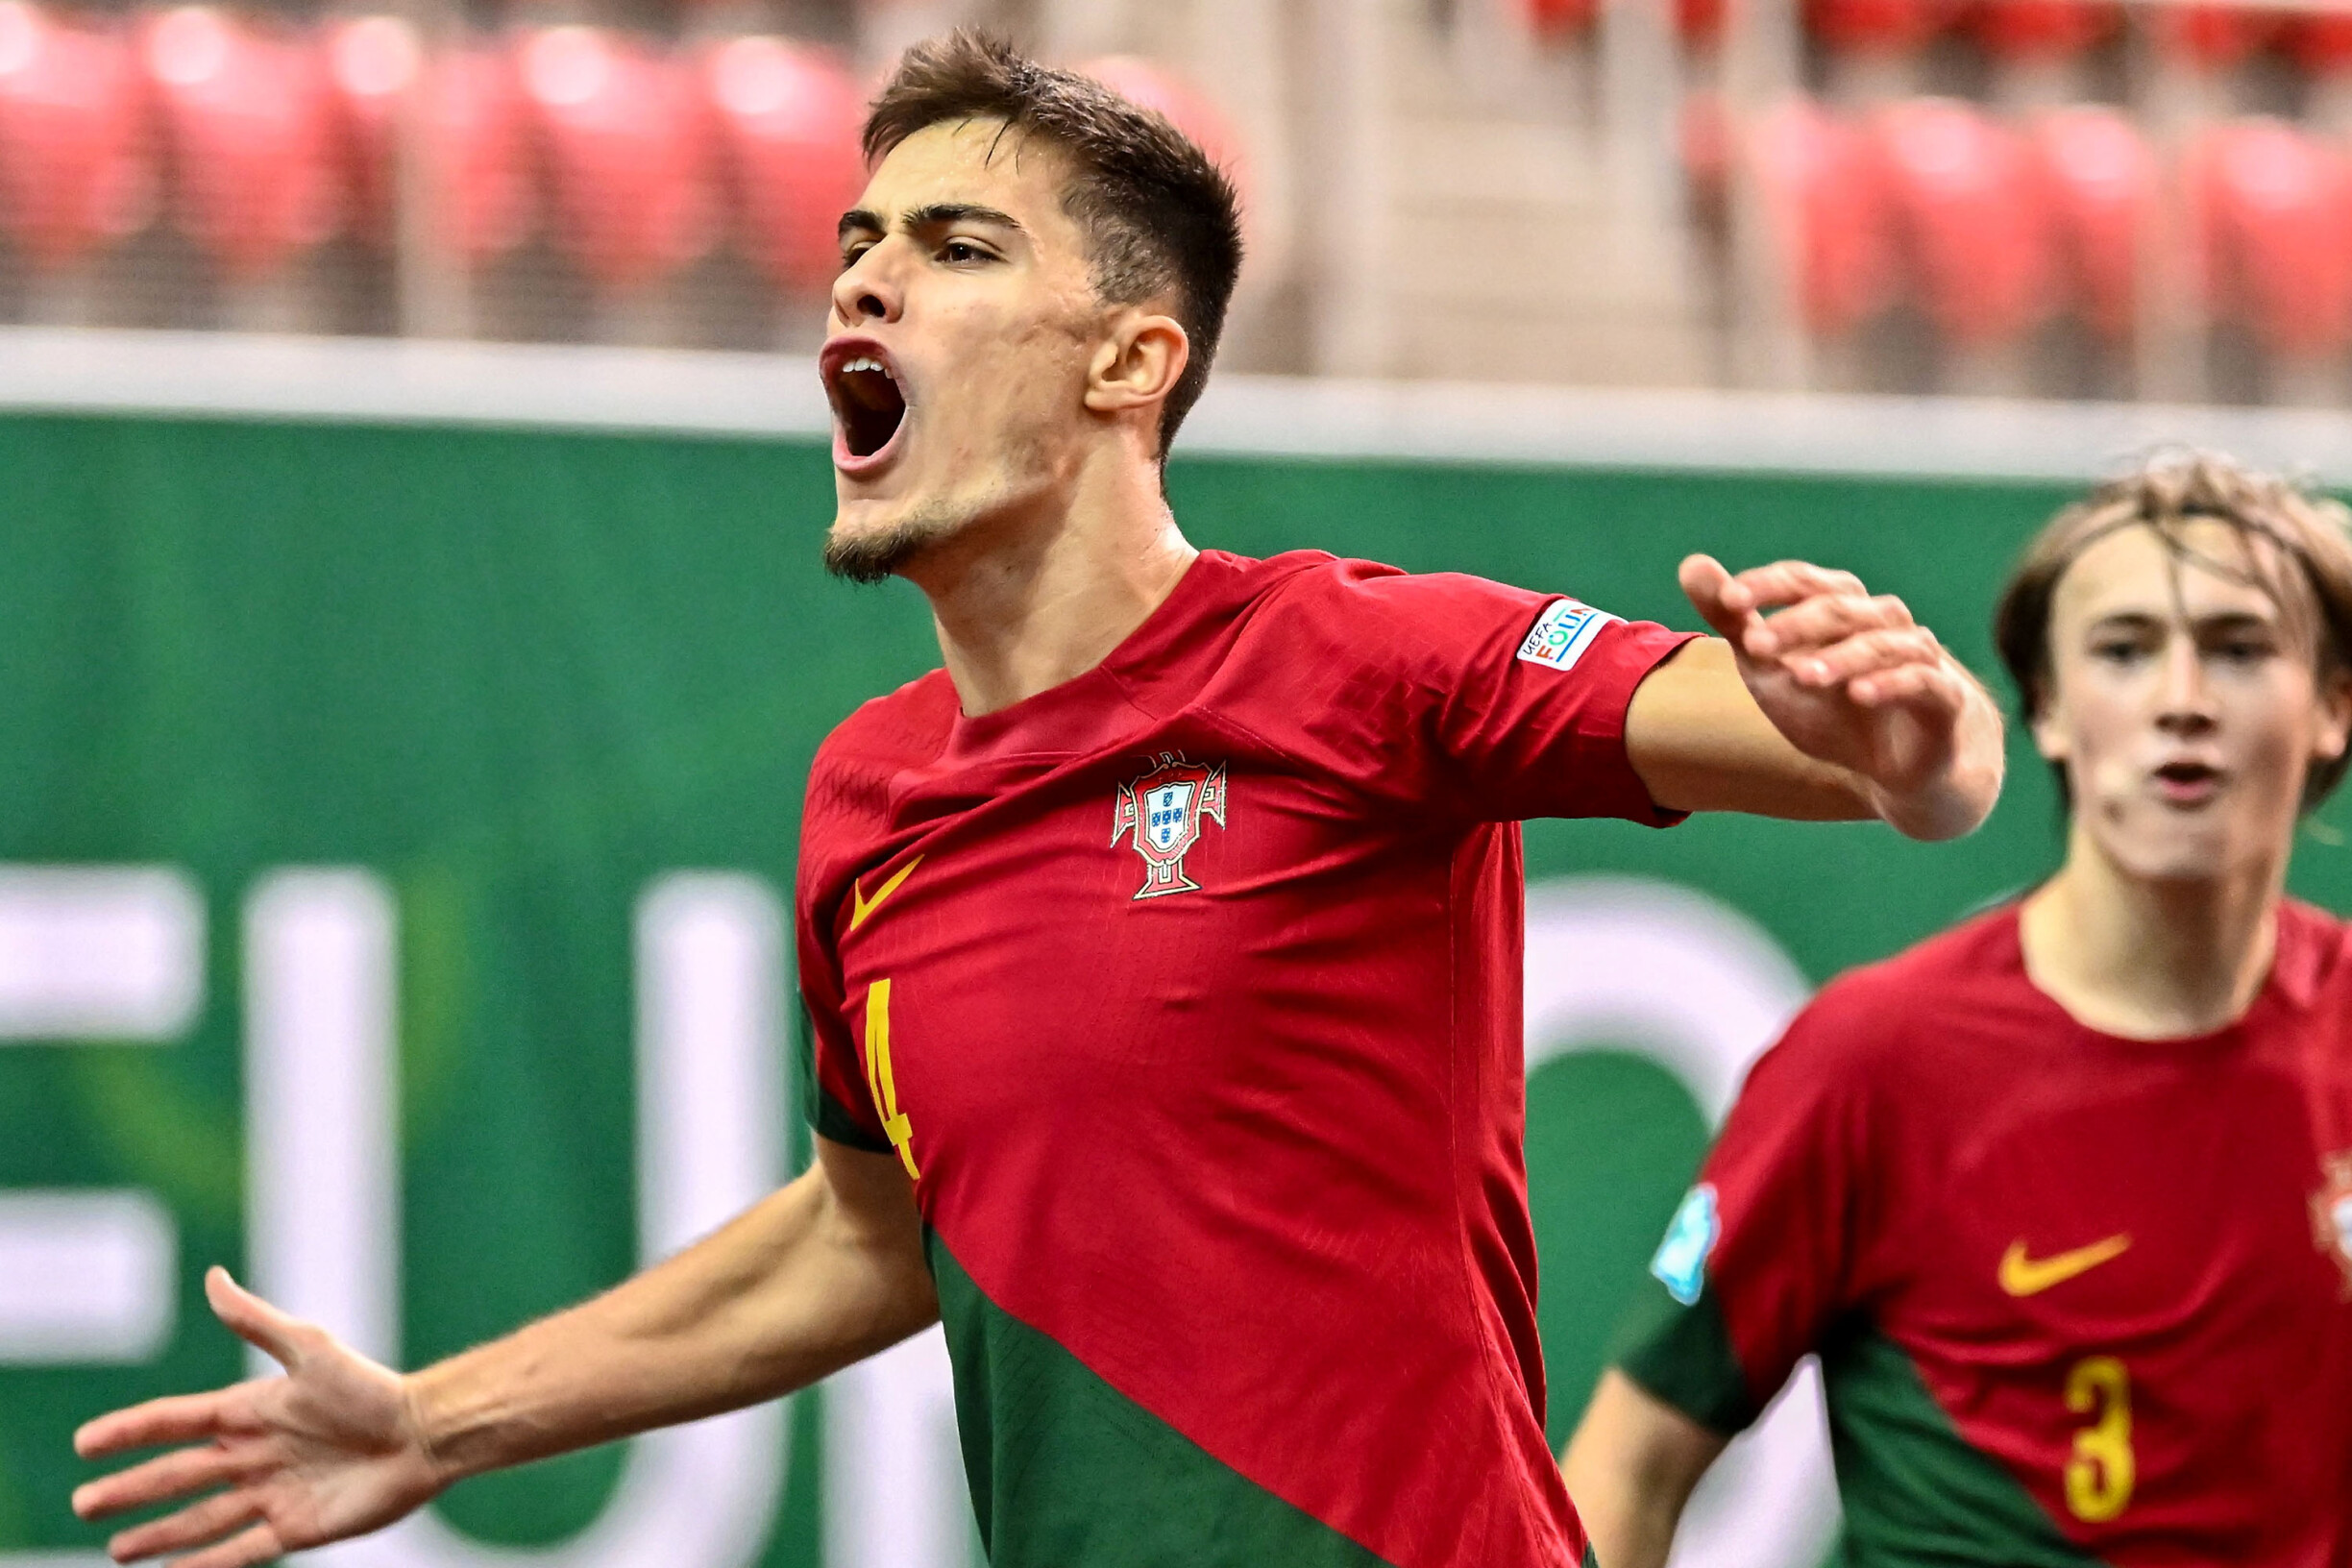 Portugal bate Espanha por 5-2 em Elvas (futsal, sub-19)